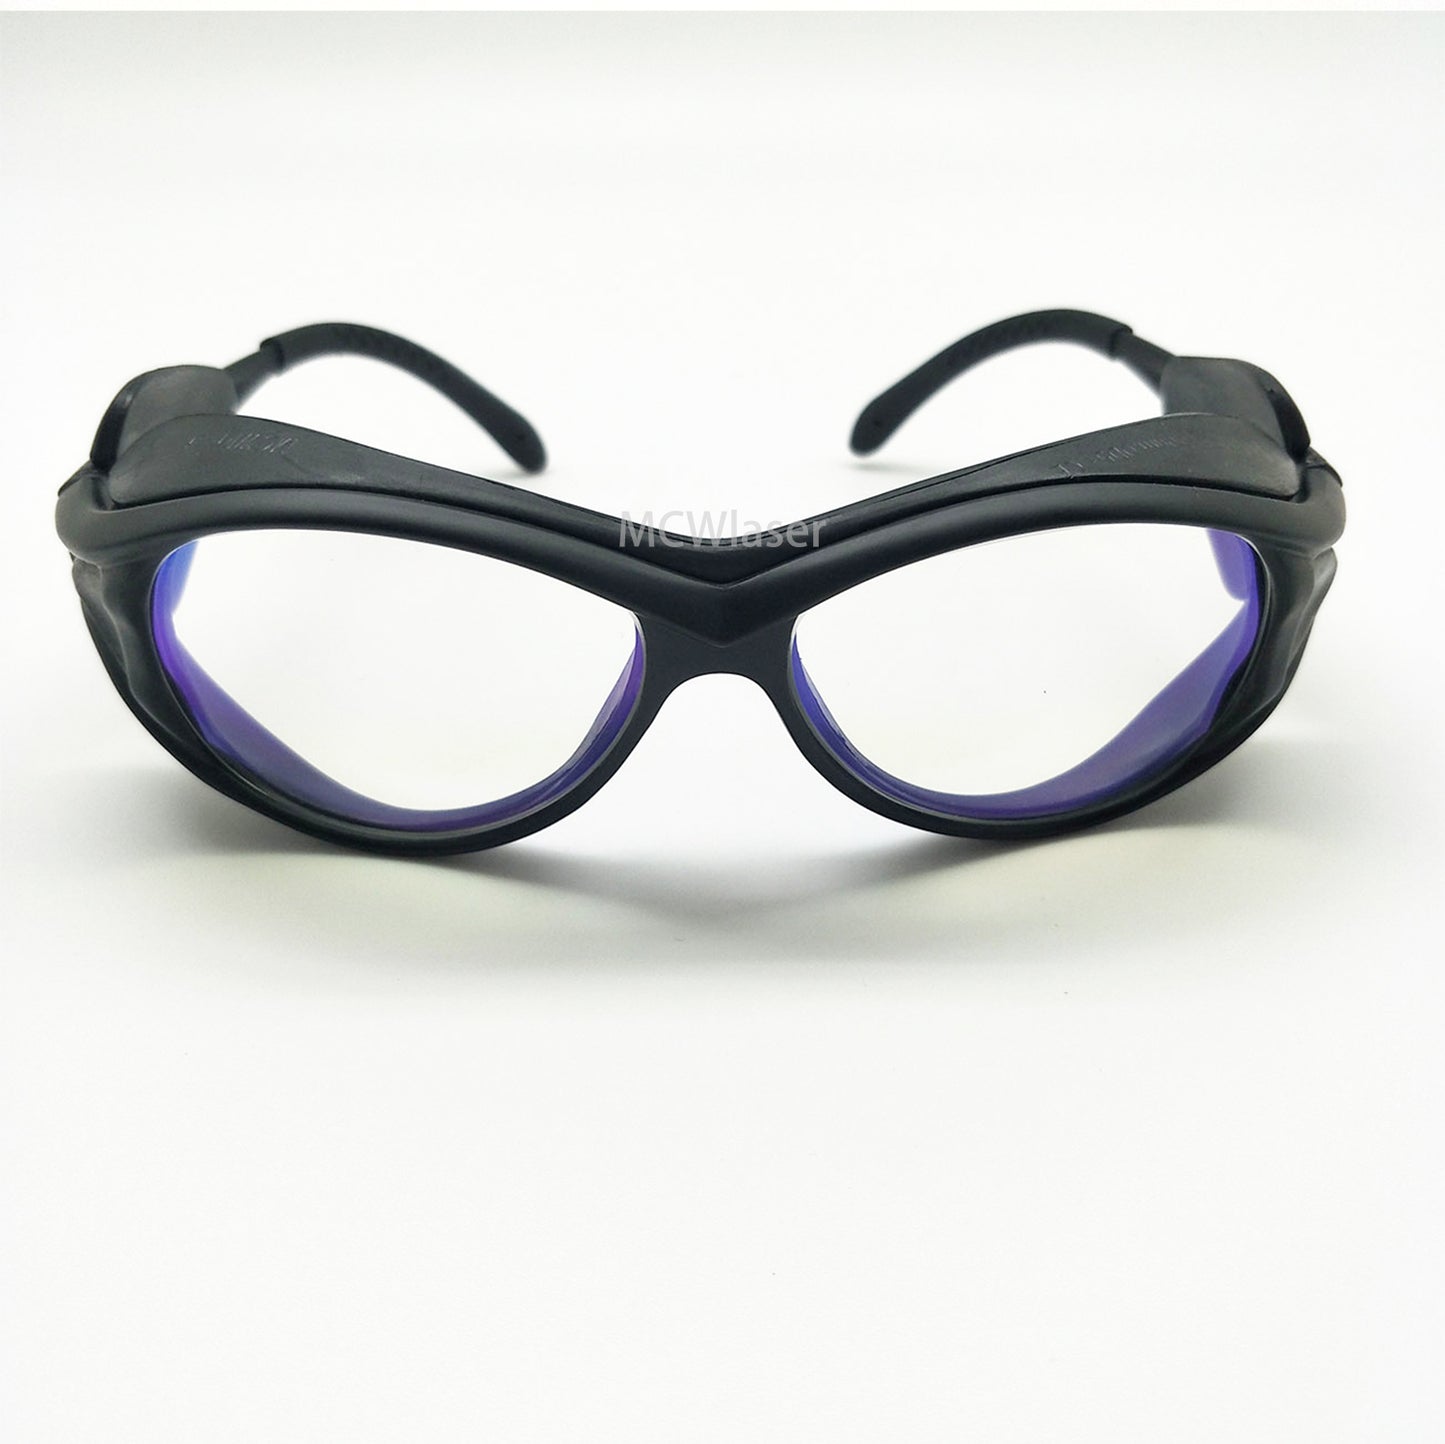 Lunettes de protection laser à fibre pour lunettes de protection laser 1064nm